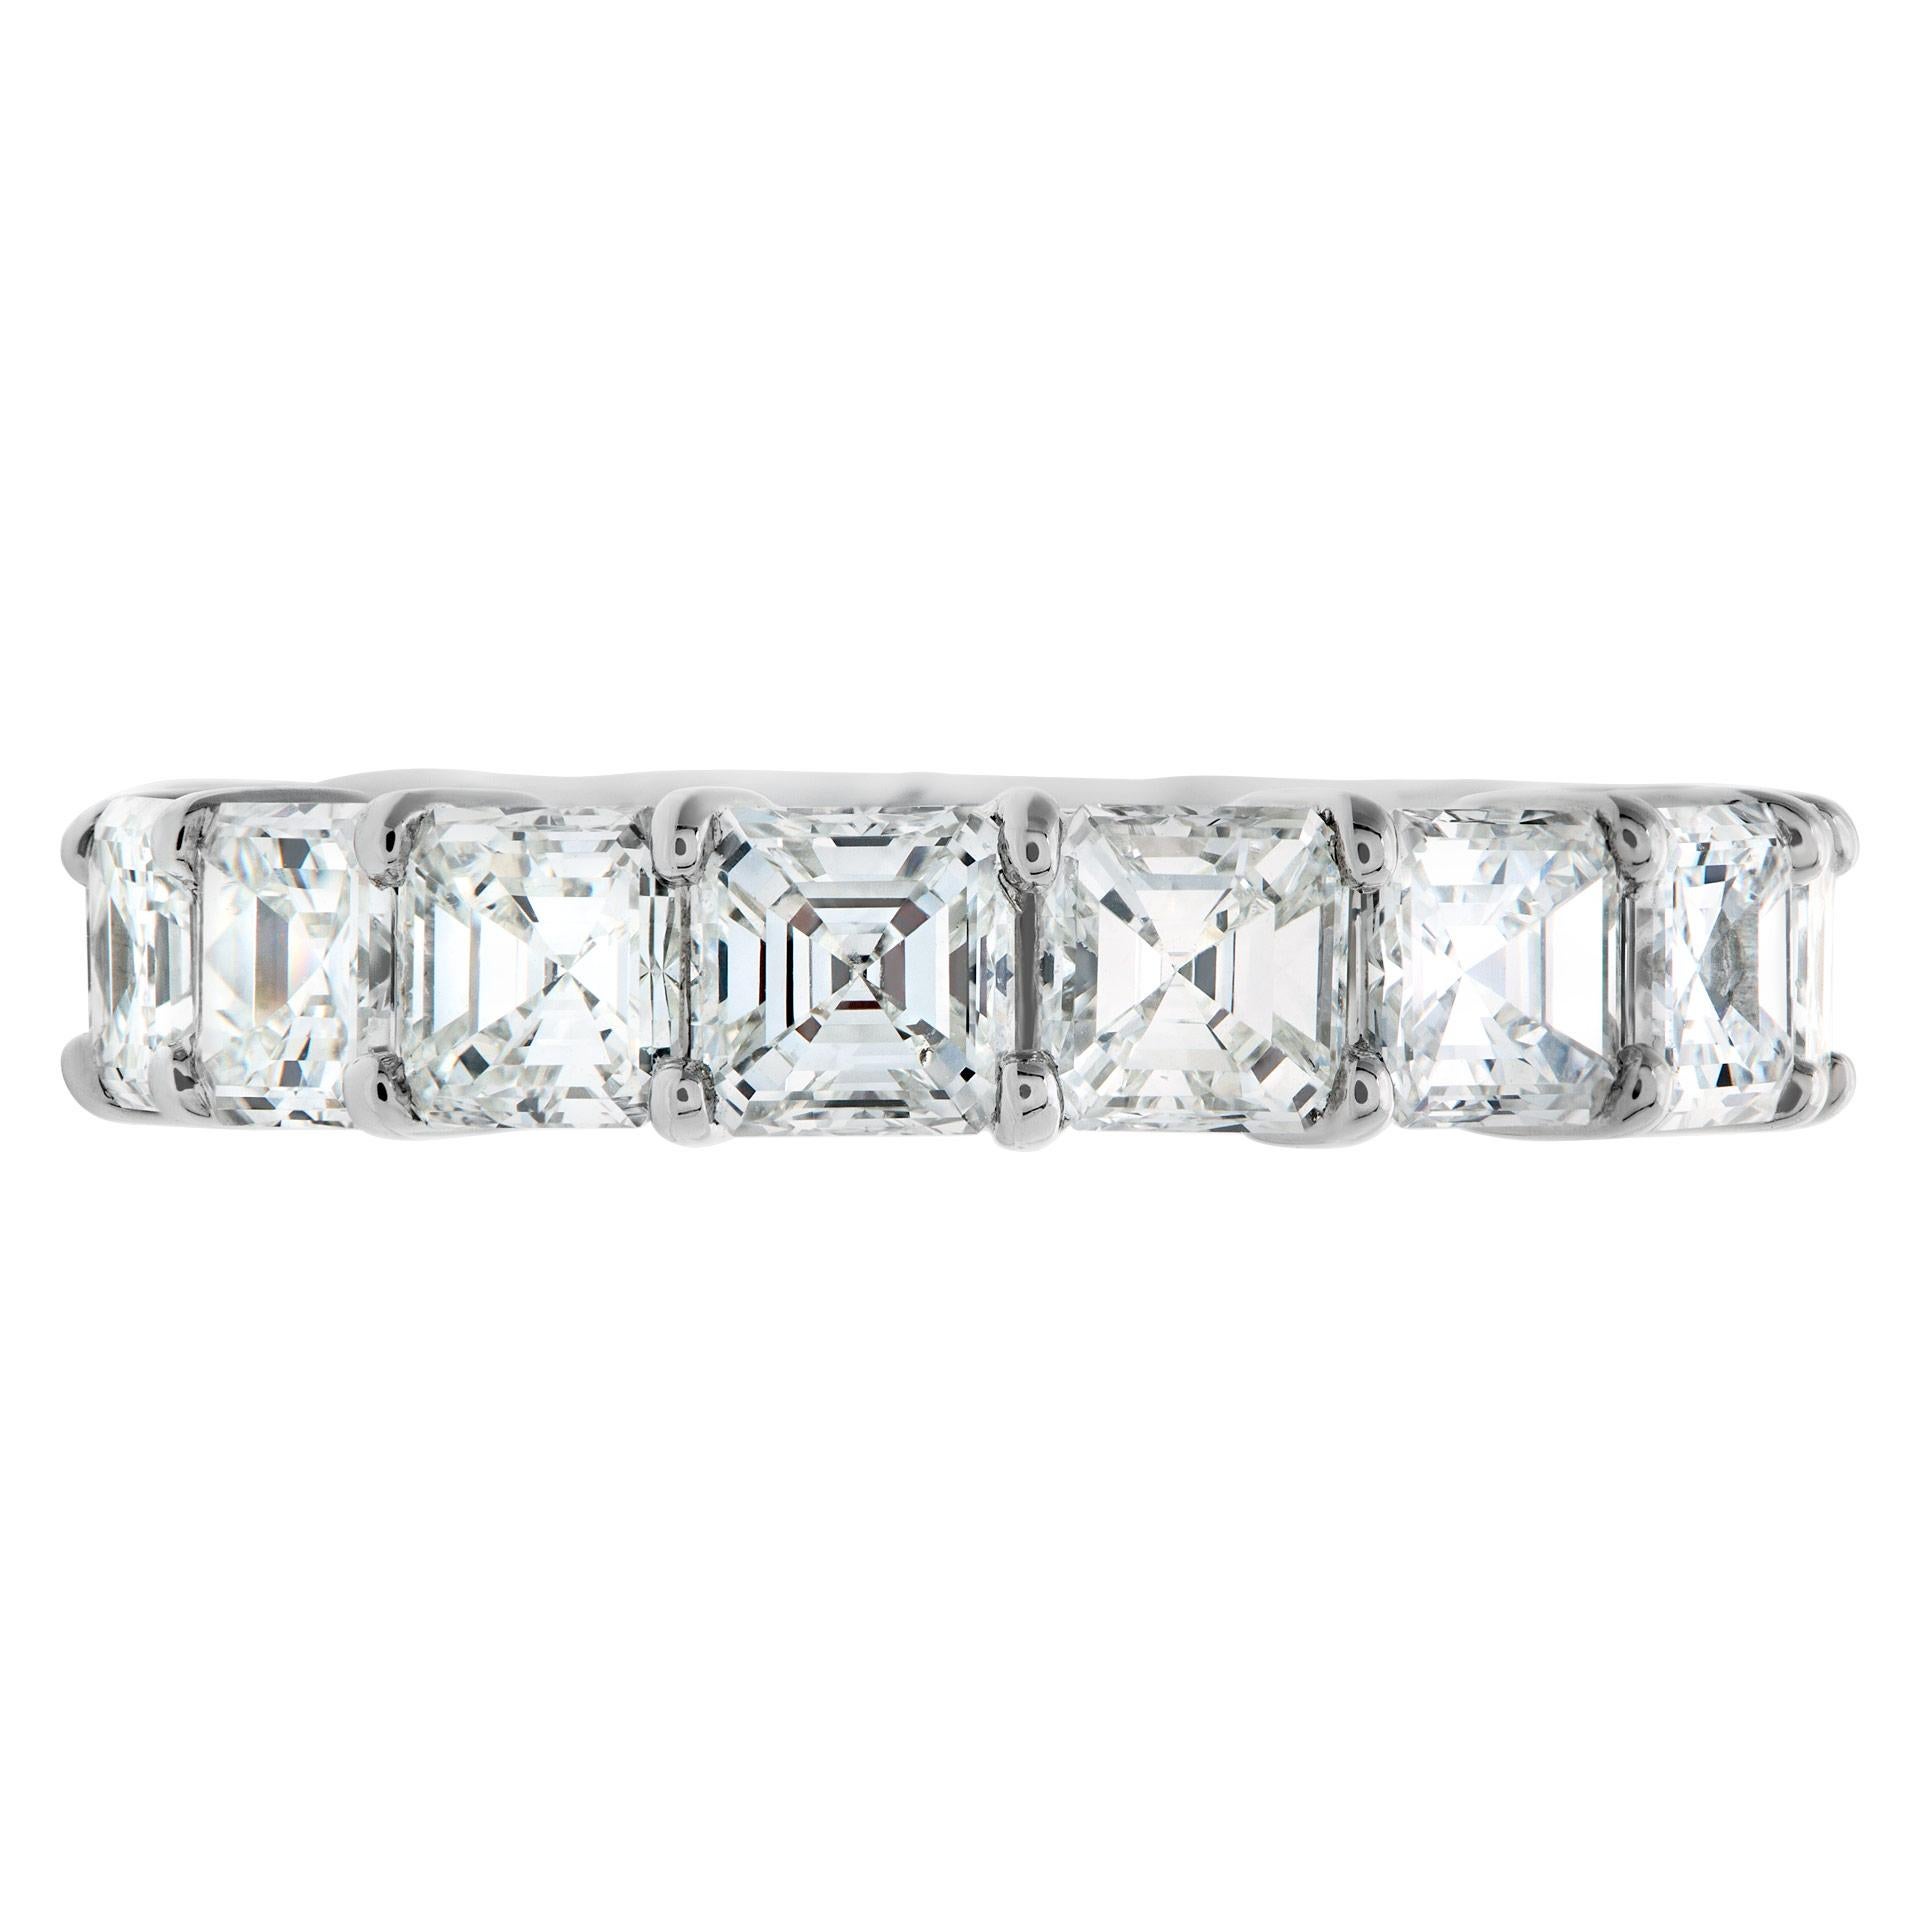 Ewiges Diamantband mit 16 Diamanten im Asscher-Schliff von durchschnittlich je 0,28 Karat und einem Gesamtgewicht von ca. 4,62 Karat in Diamanten der Farbe F-G und der Reinheit VS, alle in Platin gefasst. Größe 4,25.
